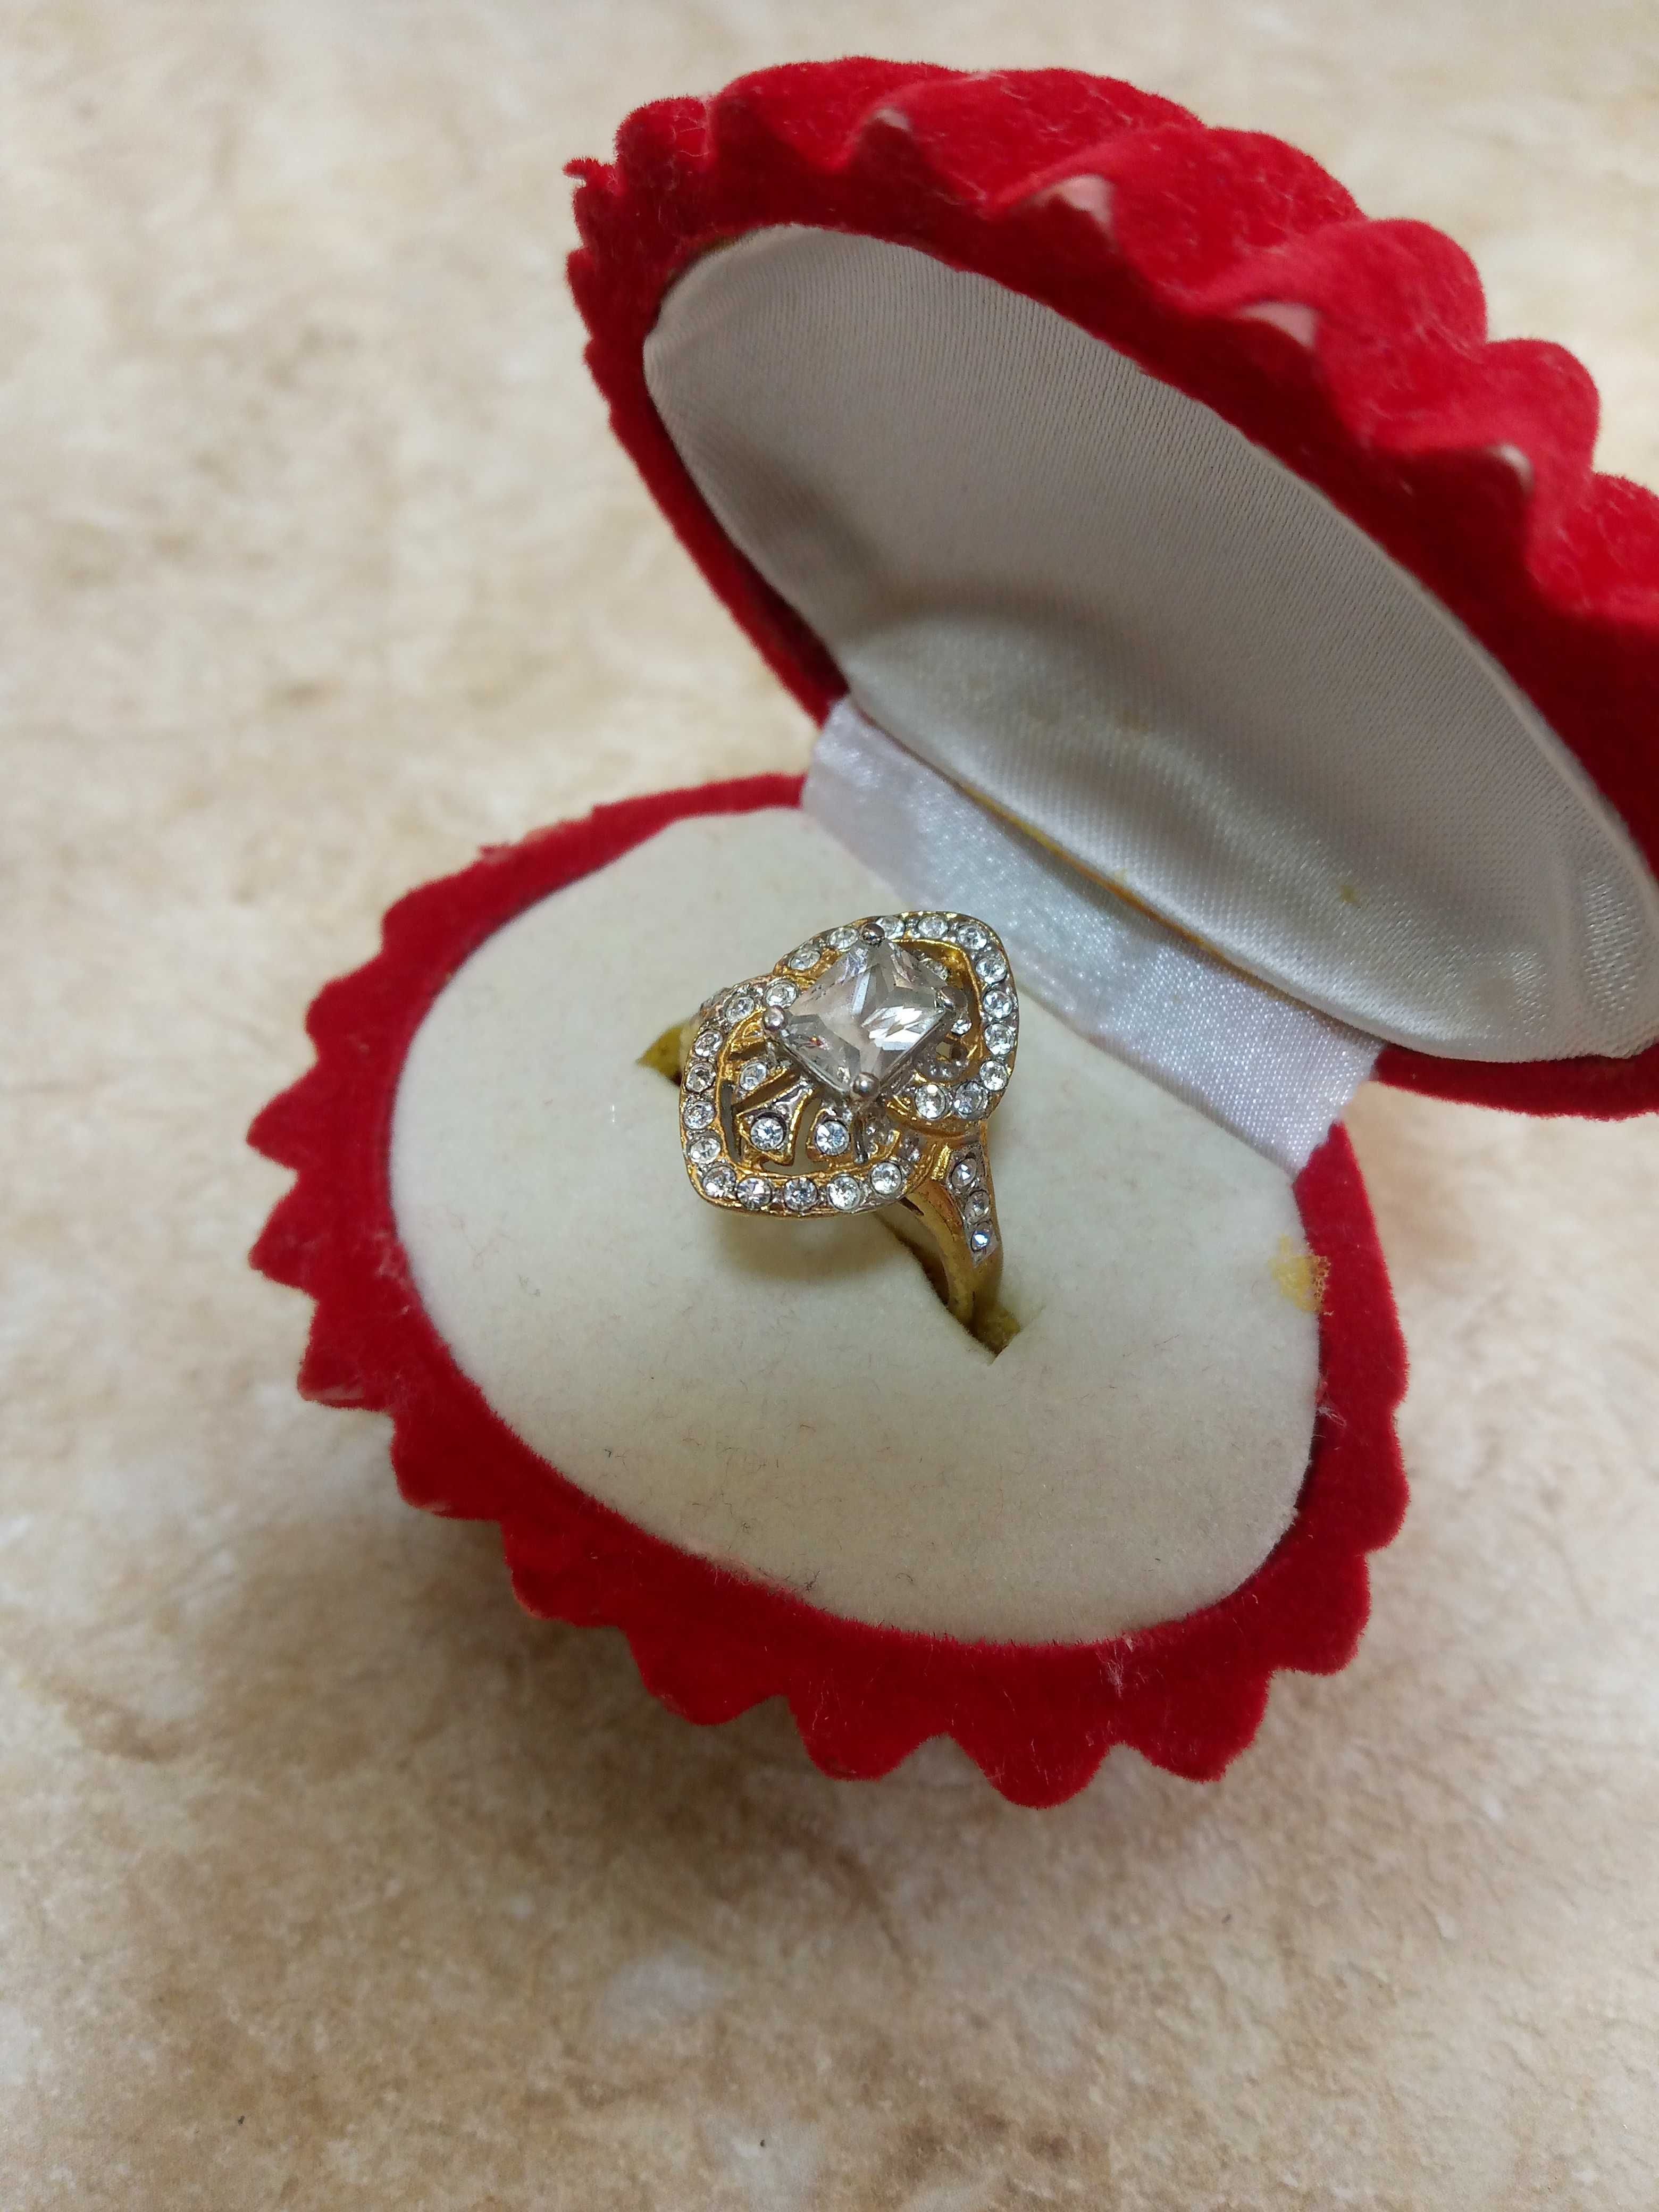 Продается  кольцо с красивыми камнями, размер 19.Цена 50 тысяч